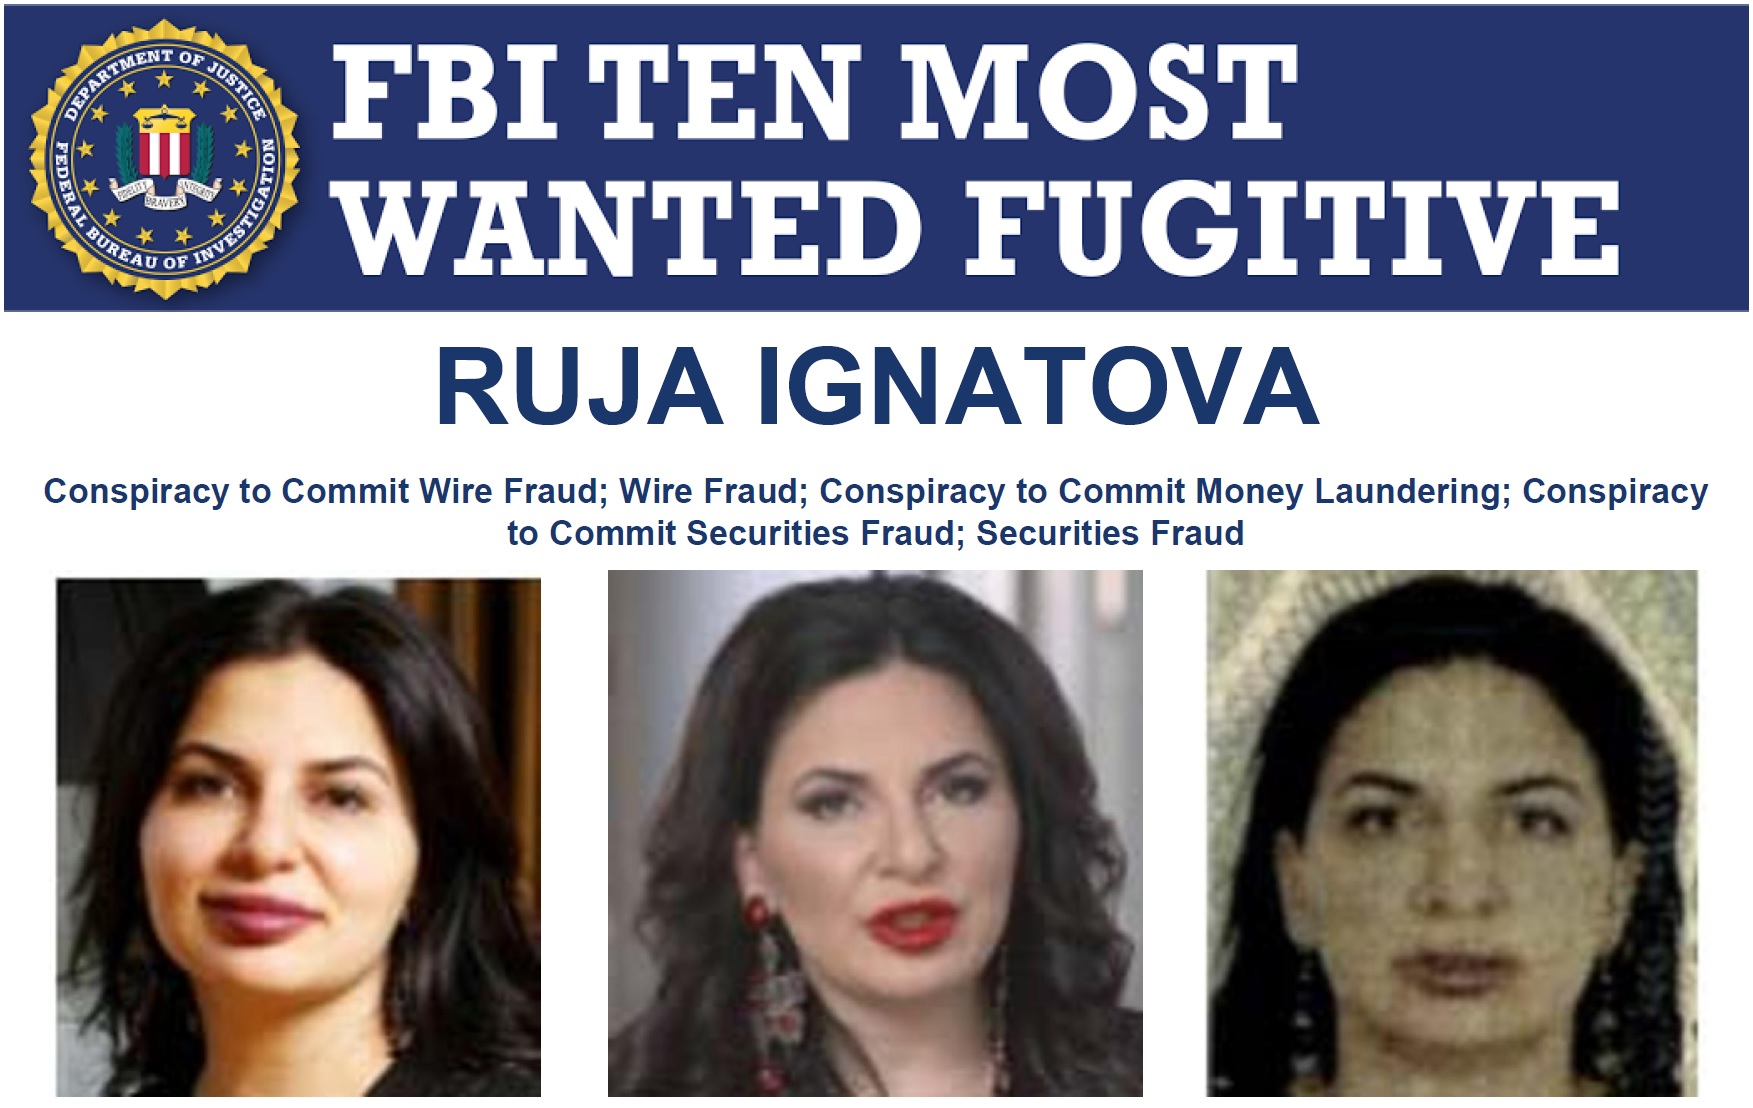 Qui est Ruja Ignatova : la reine des crypto-monnaies qui a escroqué des investisseurs de 4 milliards de dollars a désormais une prime de 5 millions de dollars sur sa tête